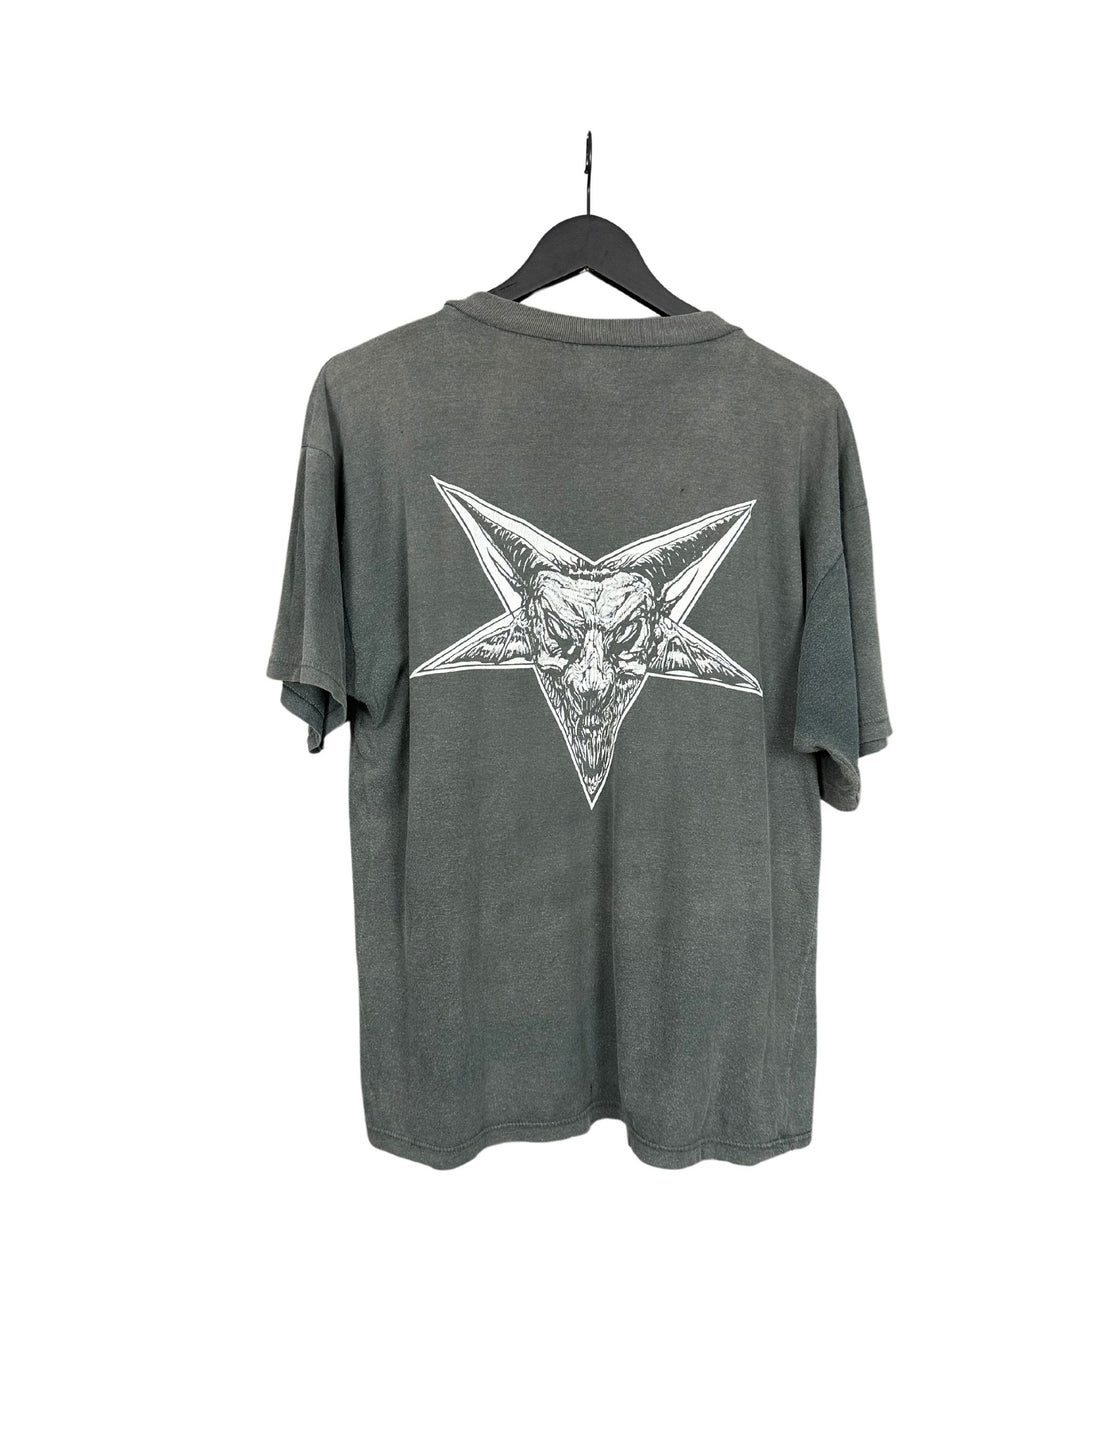 Asphyx 90s Vintage T-Shirt